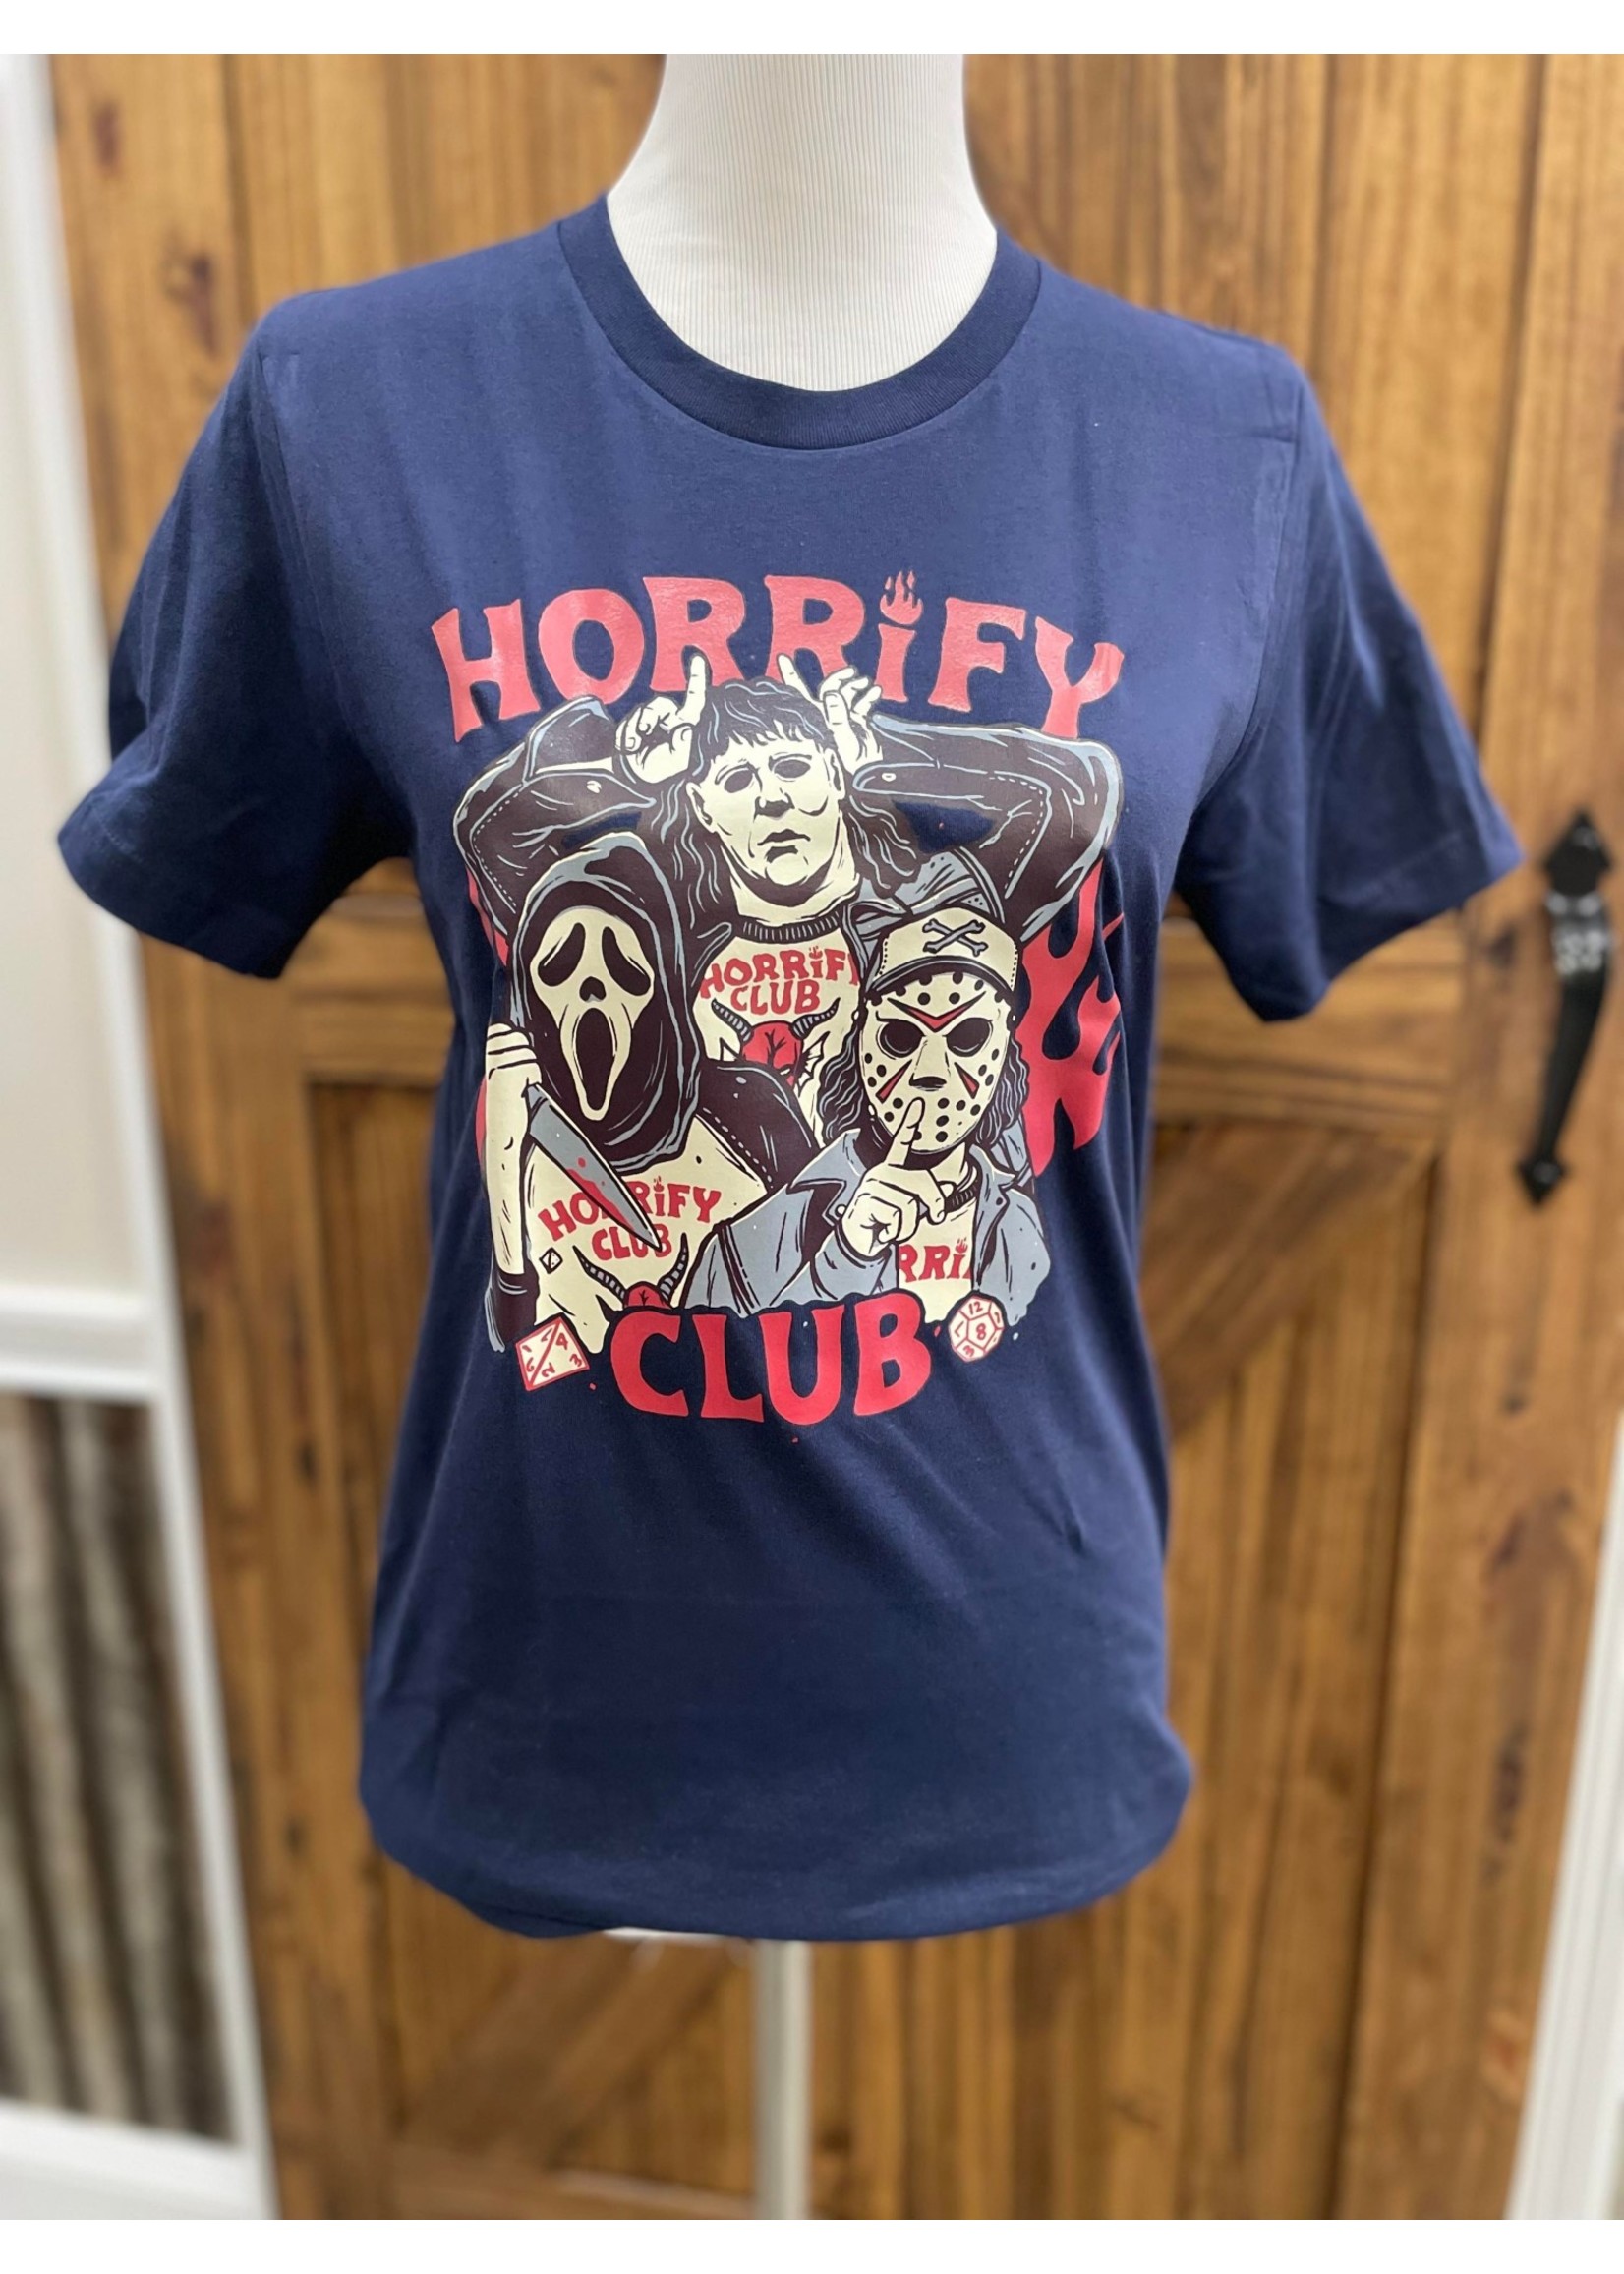 Horrify Club Tshirt